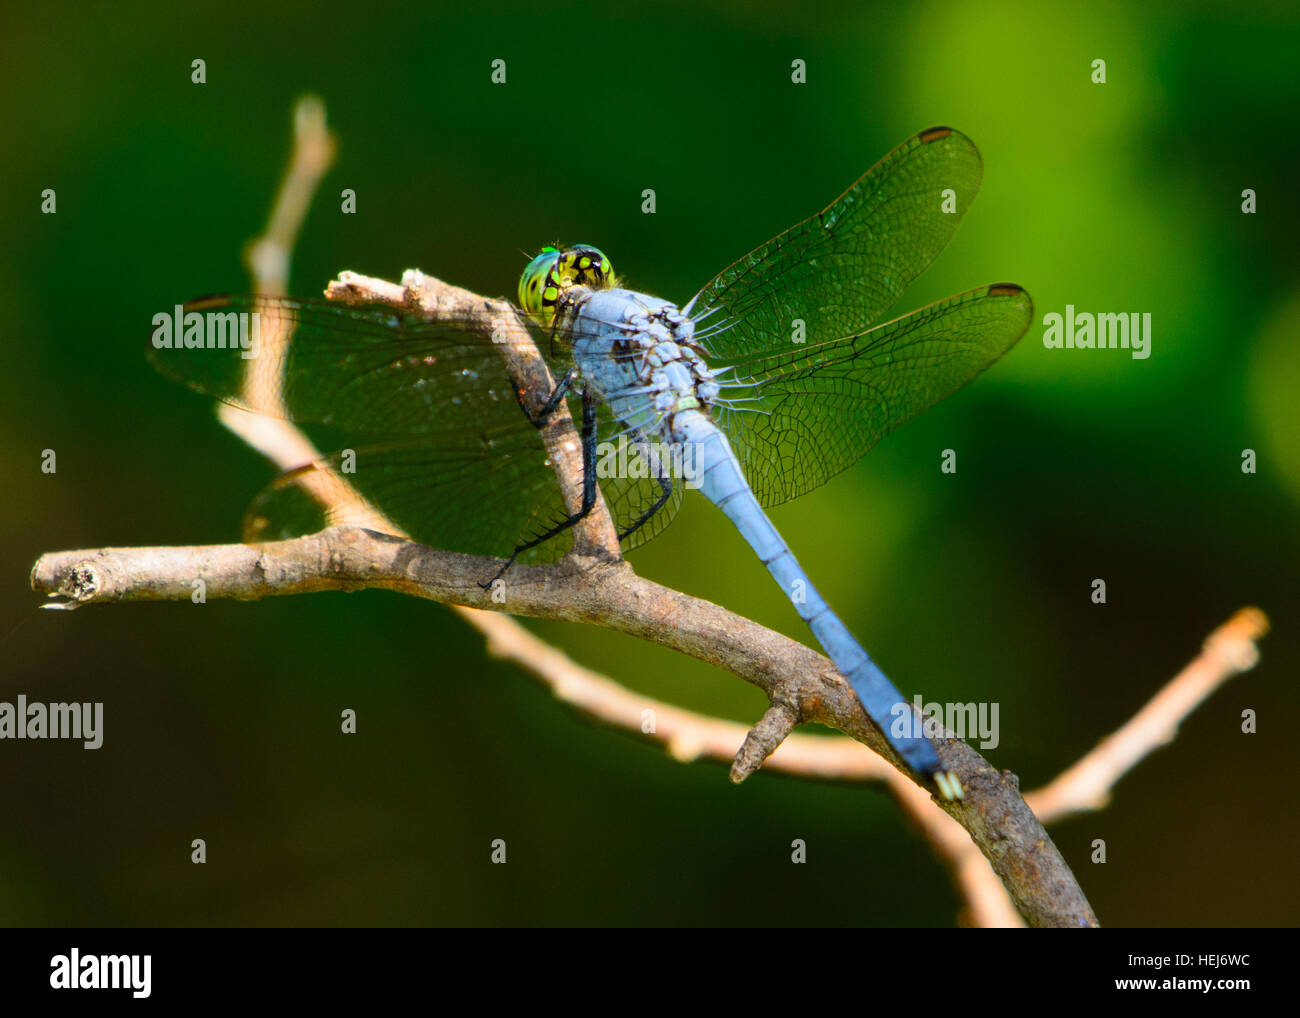 Blu maschio (dasher Pachydiplax longipennis) dragonfly su un ramoscello. Una schiumarola visto dal retro. Vivaci occhi verdi. vista chiara della testa Foto Stock